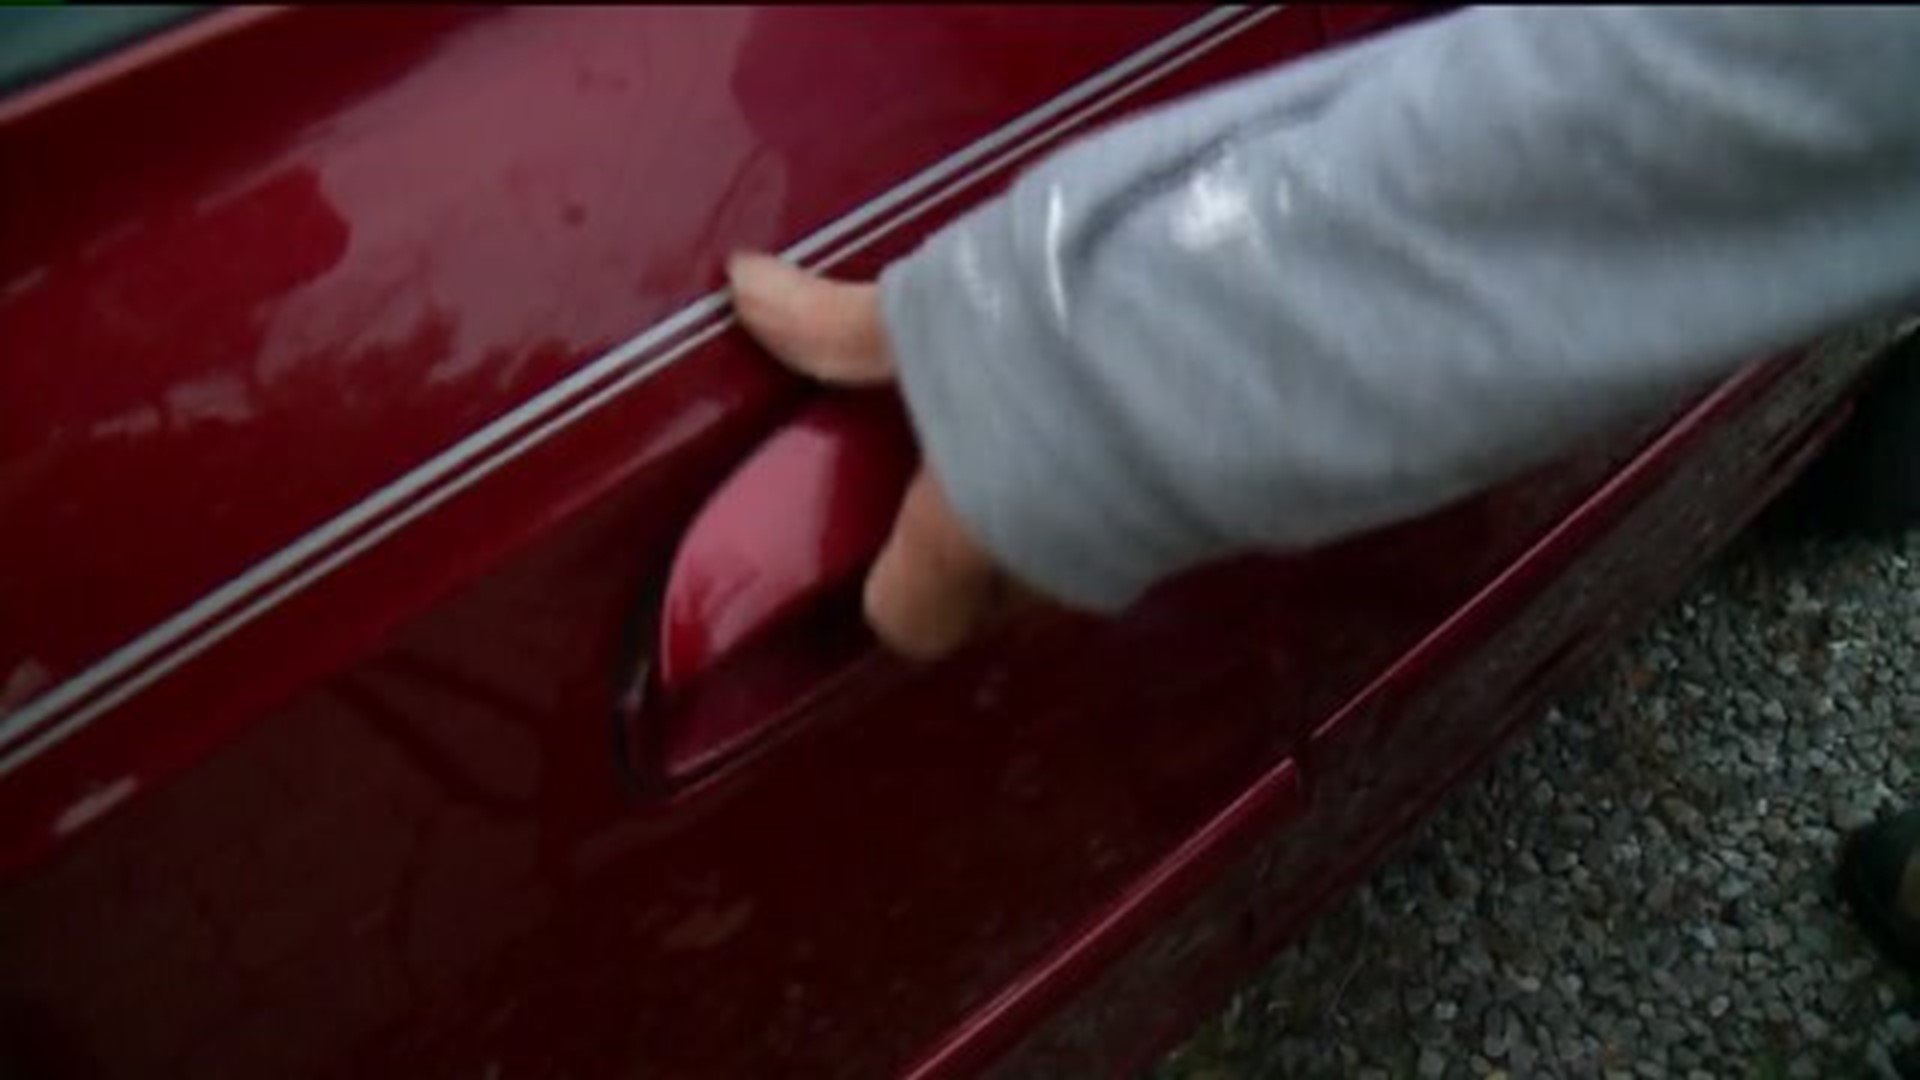 Police warn people to lock car doors as burglaries increase